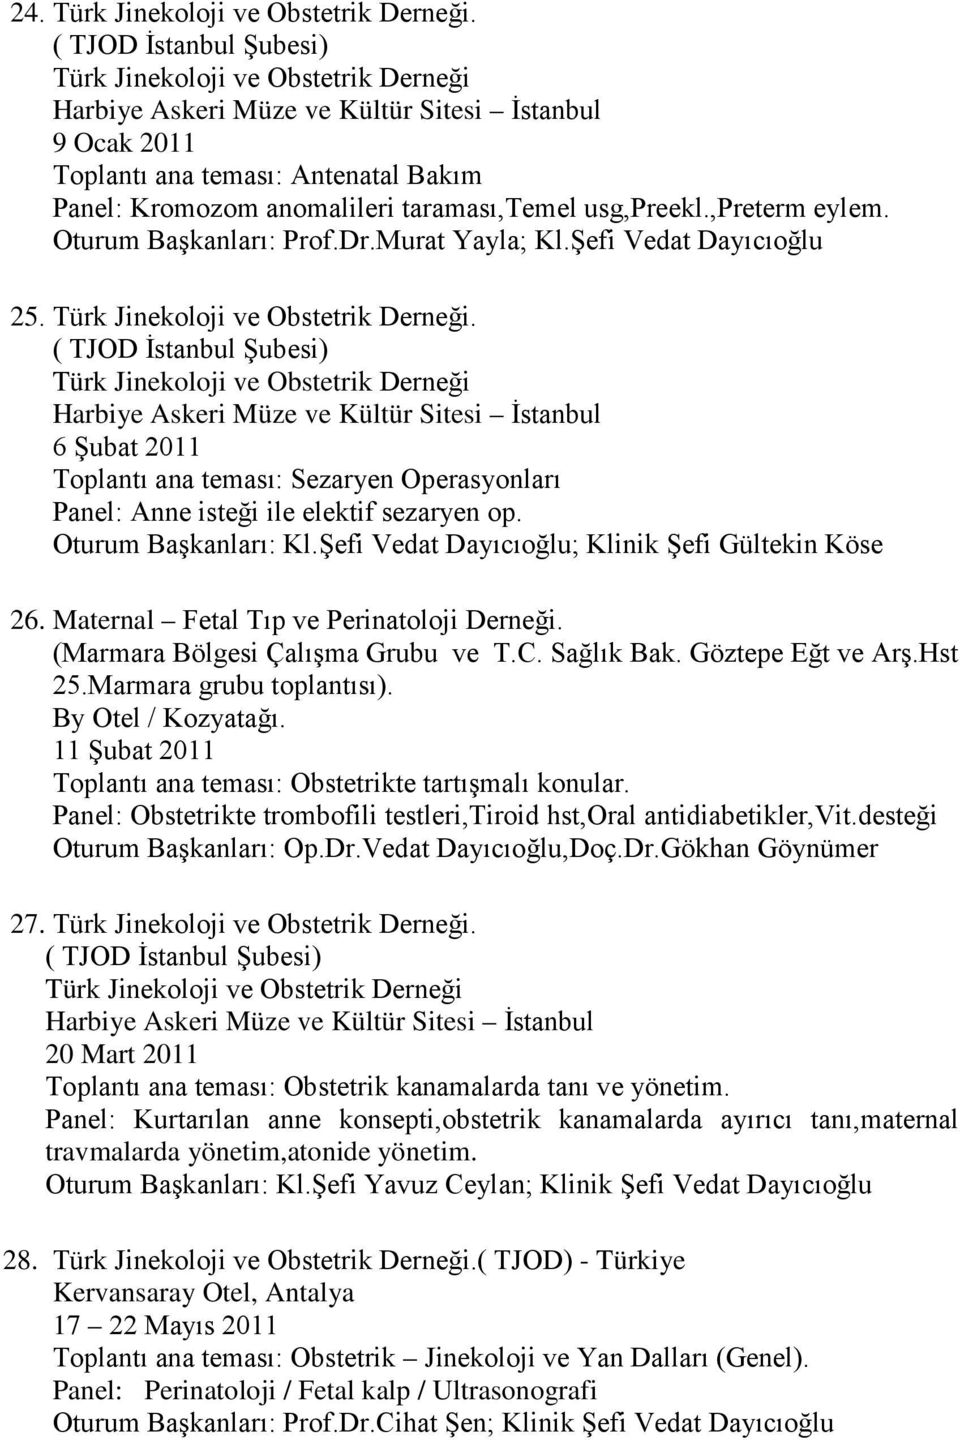 usg,preekl.,preterm eylem. Oturum Başkanları: Prof.Dr.Murat Yayla; Kl.Şefi Vedat Dayıcıoğlu 25. Türk Jinekoloji ve Obstetrik Derneği.